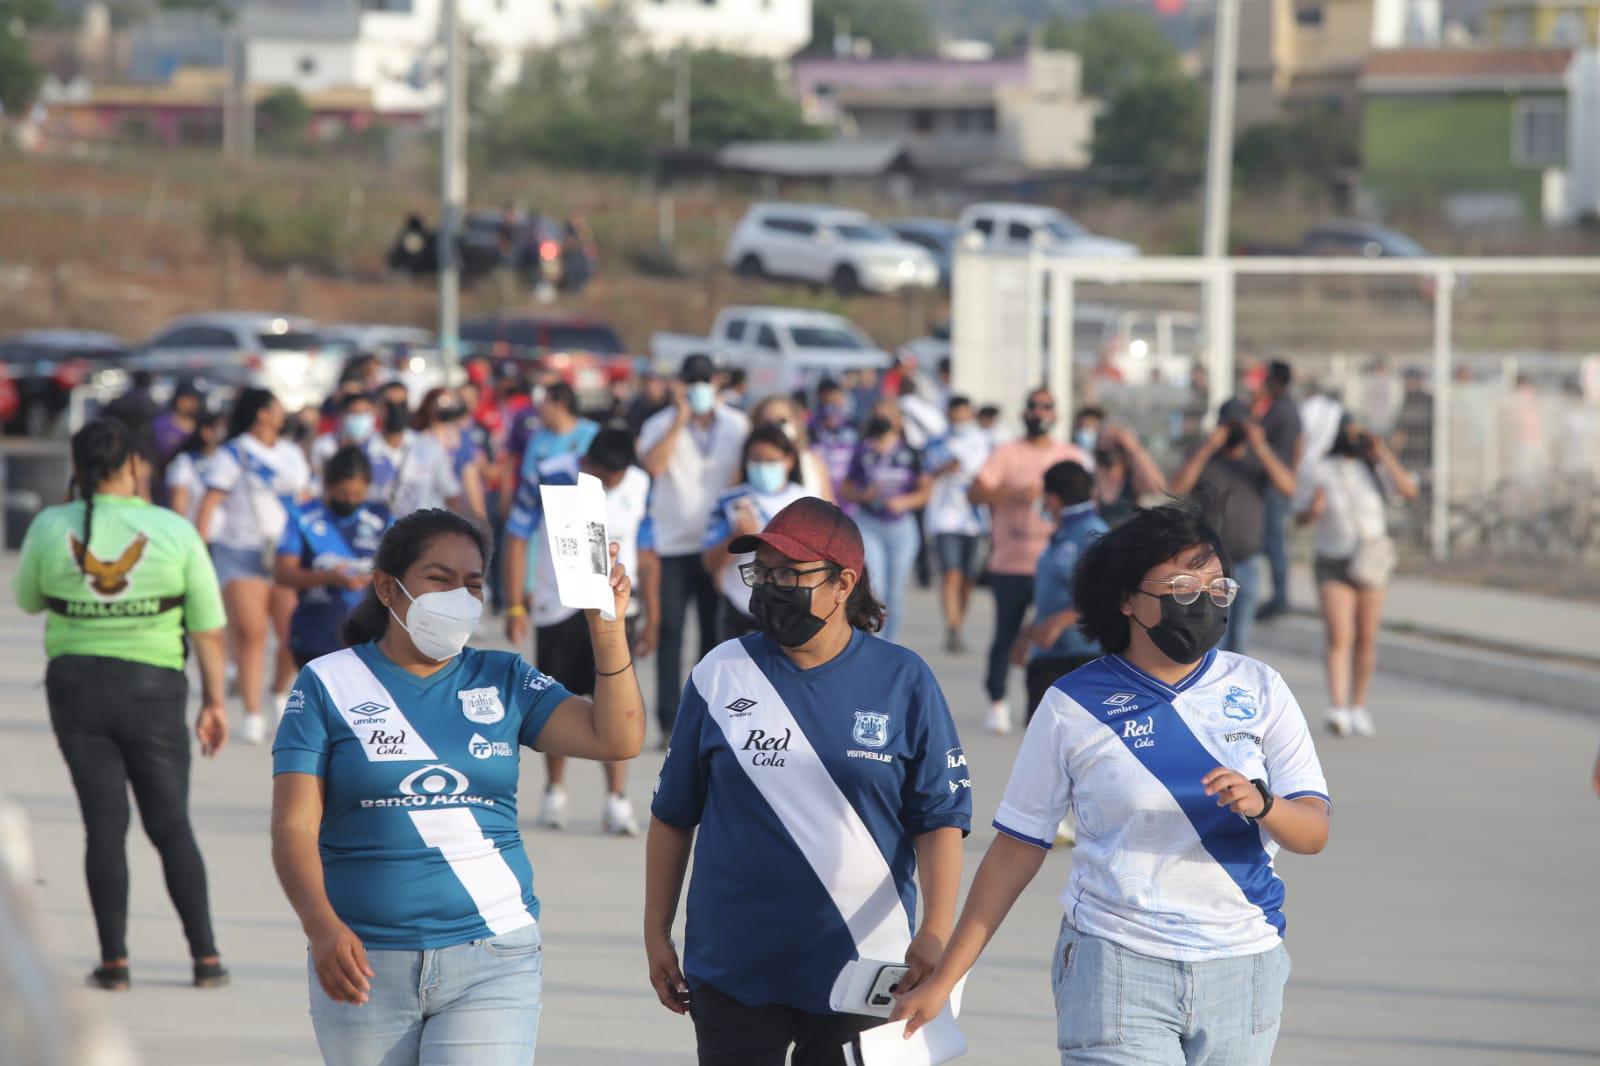 $!Cientos celebran en Mazatlán el regreso del futbol al Kraken